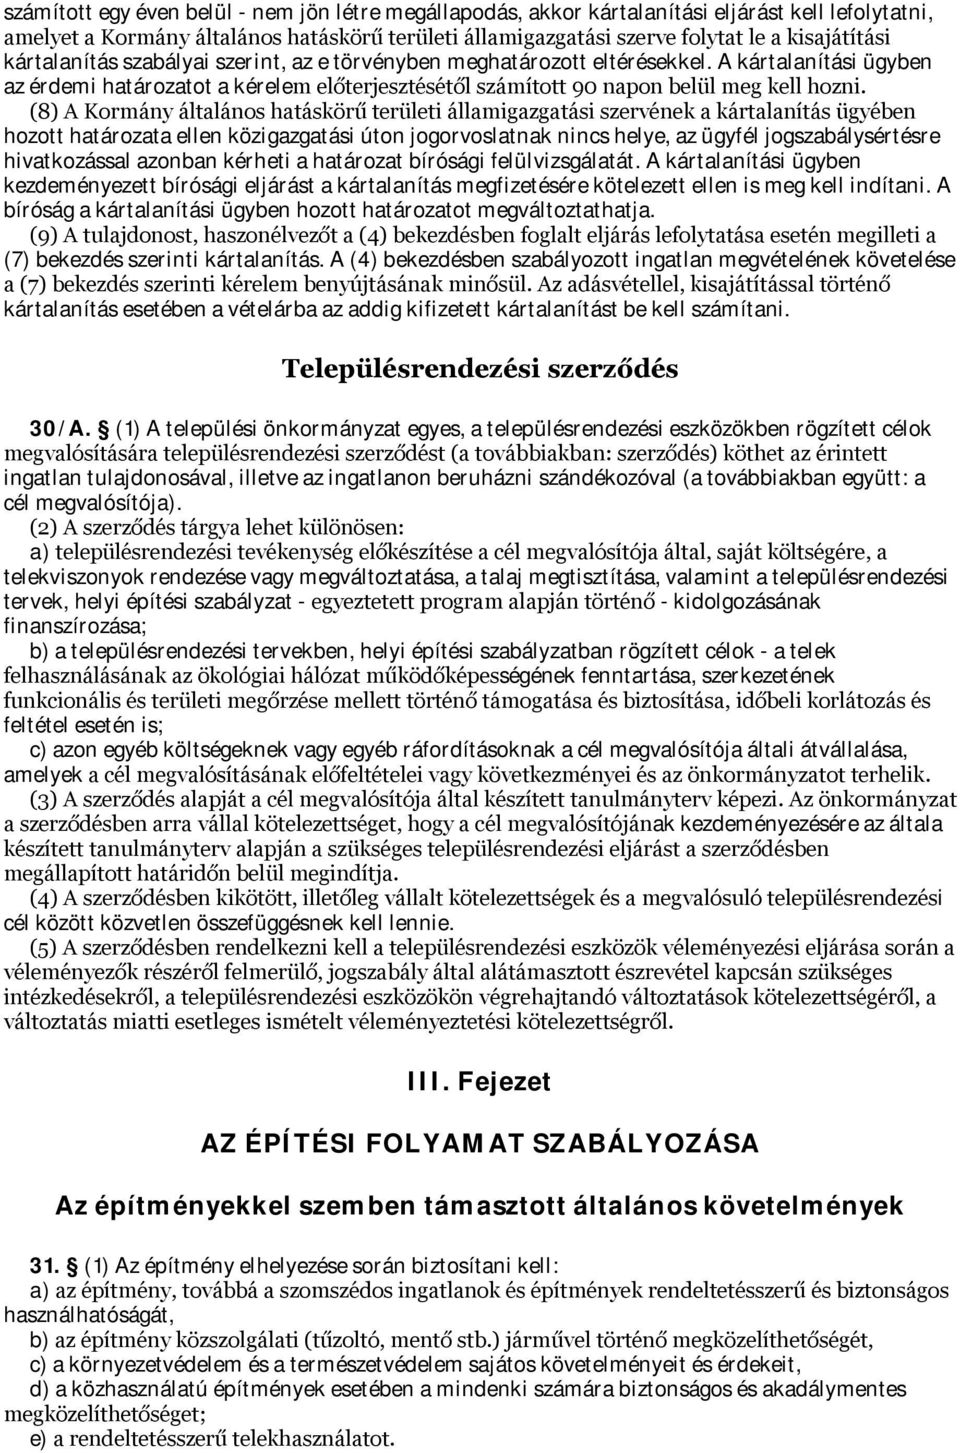 (8) A Kormány általános hatáskörű területi államigazgatási szervének a kártalanítás ügyében hozott határozata ellen közigazgatási úton jogorvoslatnak nincs helye, az ügyfél jogszabálysértésre